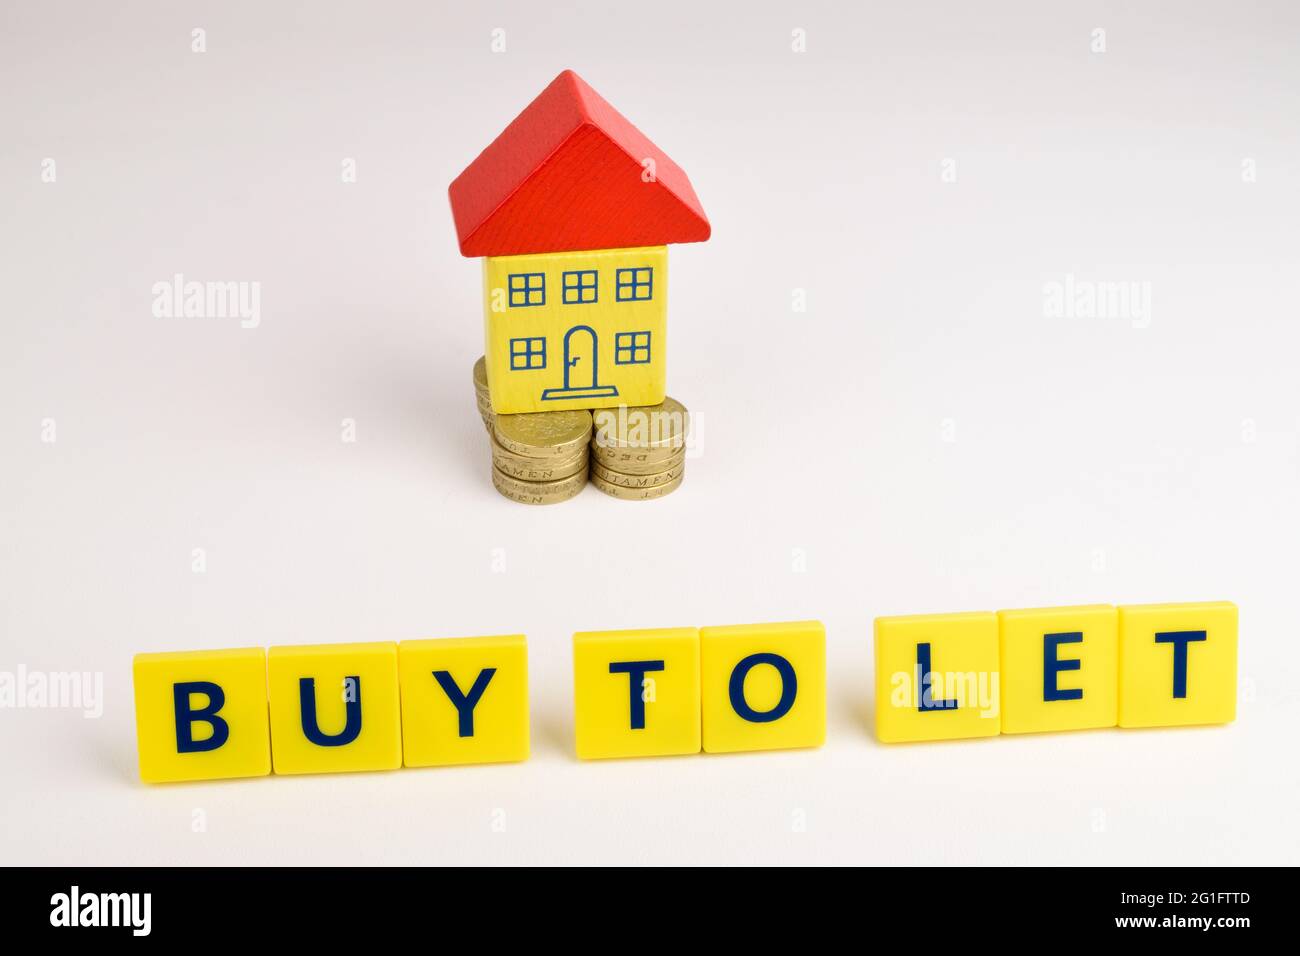 Una casa de juguetes sentada en una pila de monedas con las palabras 'Comprar a Let' delante de ella. Foto de stock